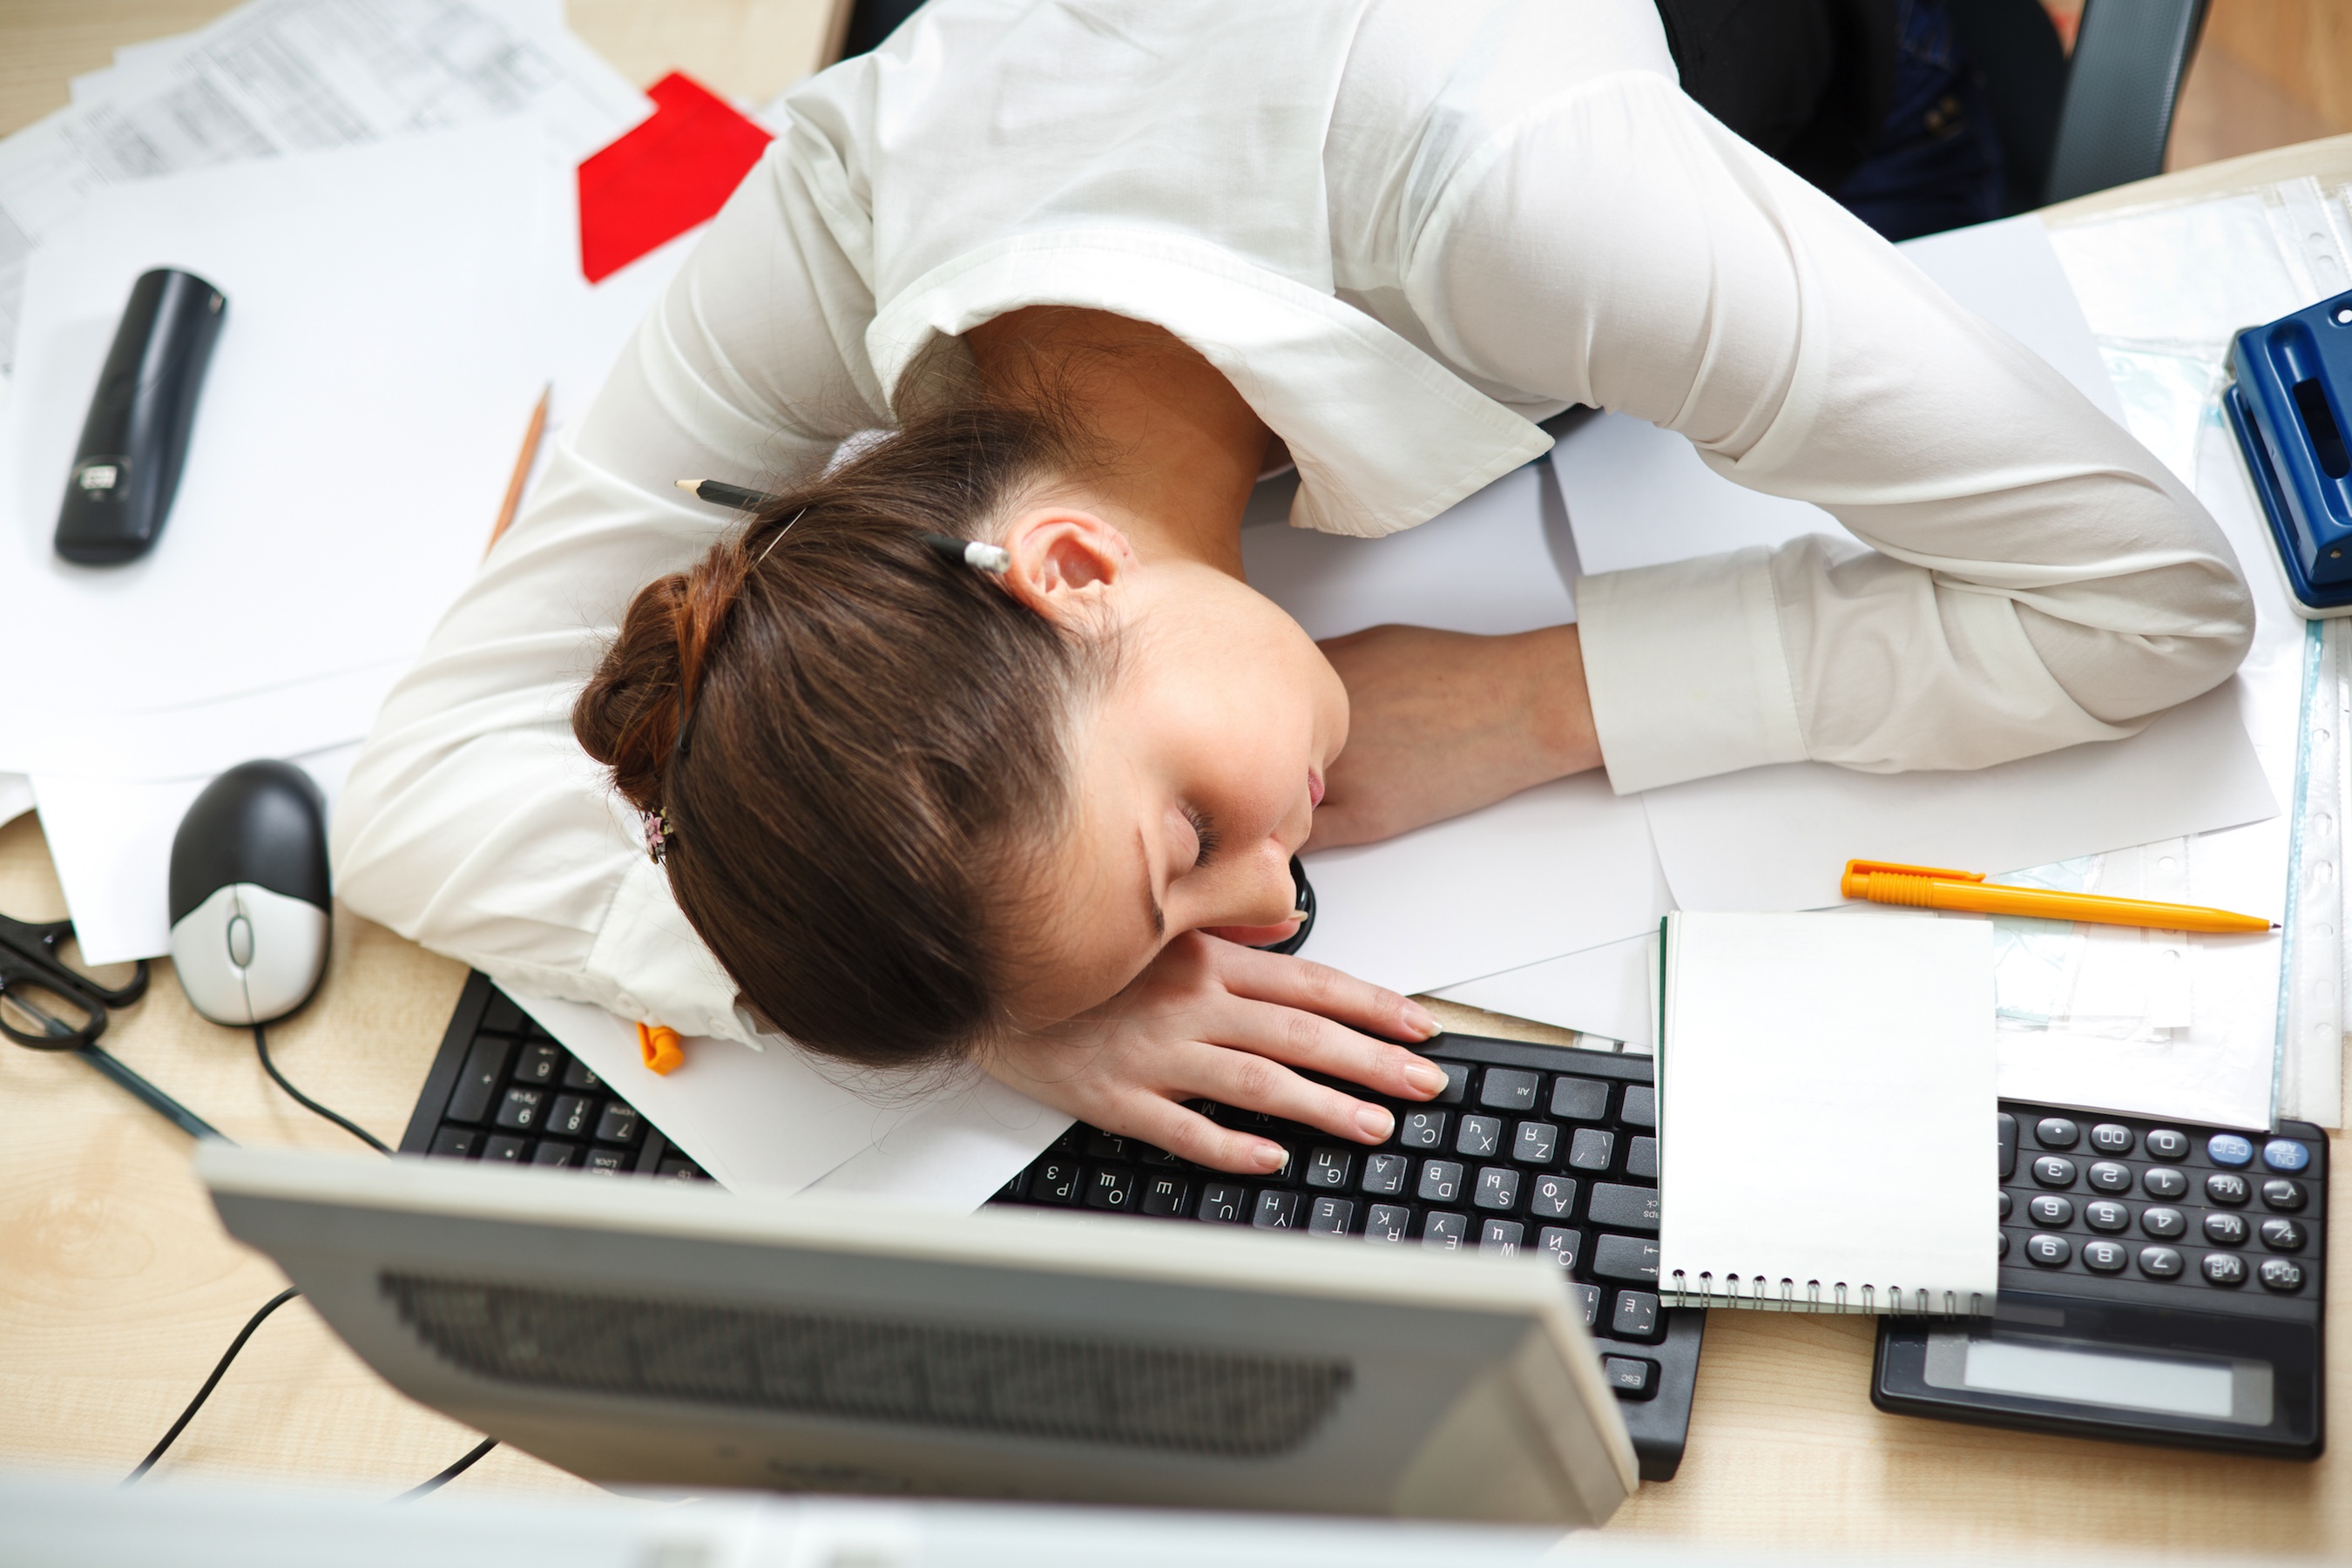 V работы. Усталость. Спит на рабочем месте. Стресс за компьютером. Усталость и сонливость.